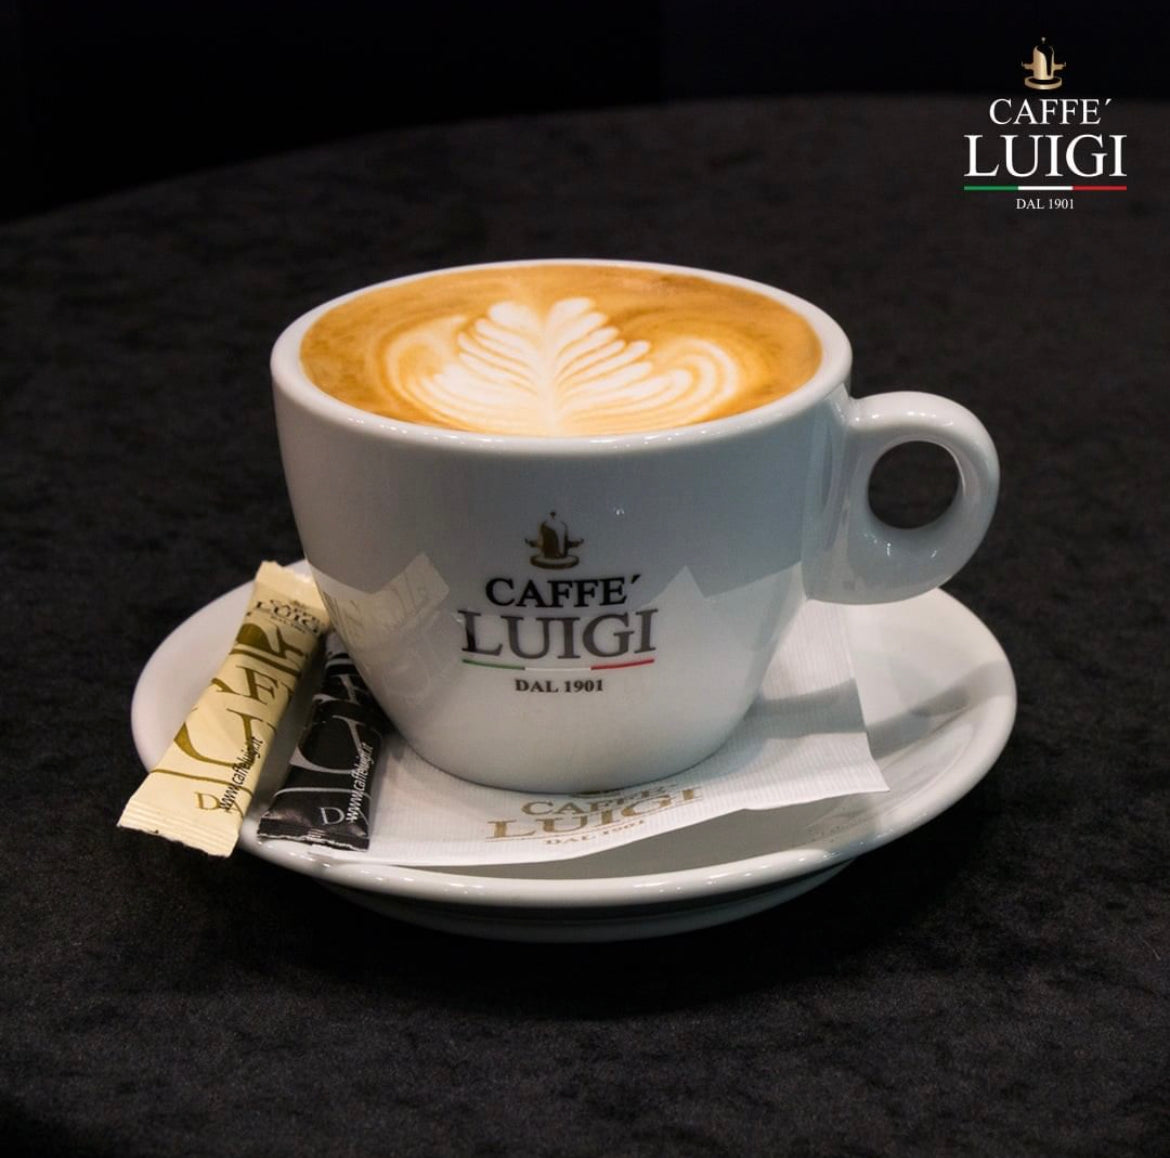 Espresso RICCO Bohnen 1Kg Caffe 'Luigi Ganze Espresso Bohnen Arabica - Robusta + 1 Cappuccino Tasse Doppelt